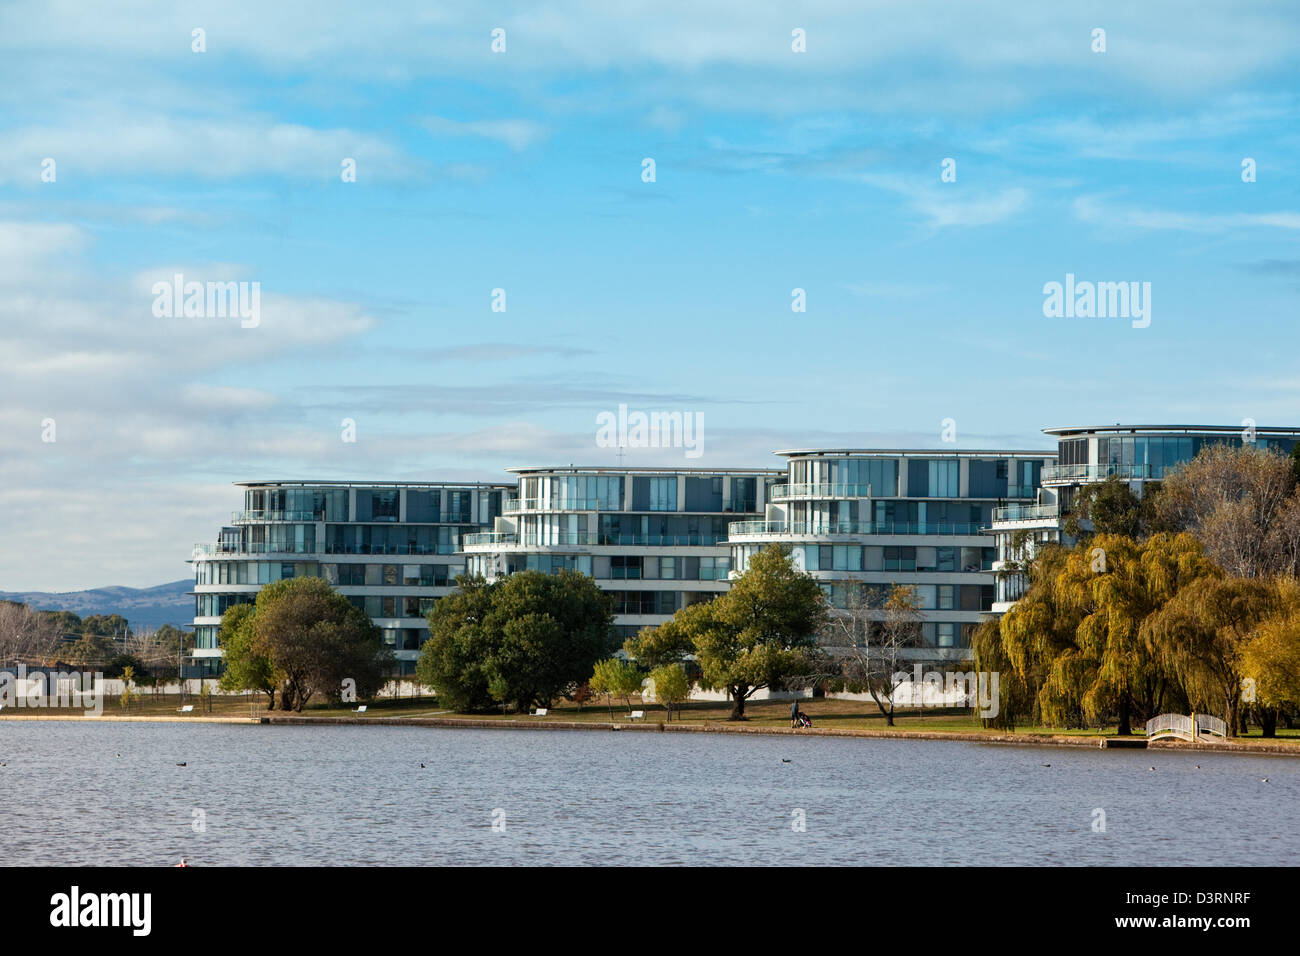 Die Waterfront Apartments - Teil der Kingston-Vorland-Sanierung. Canberra, Australian Capital Territory, Australien Stockfoto